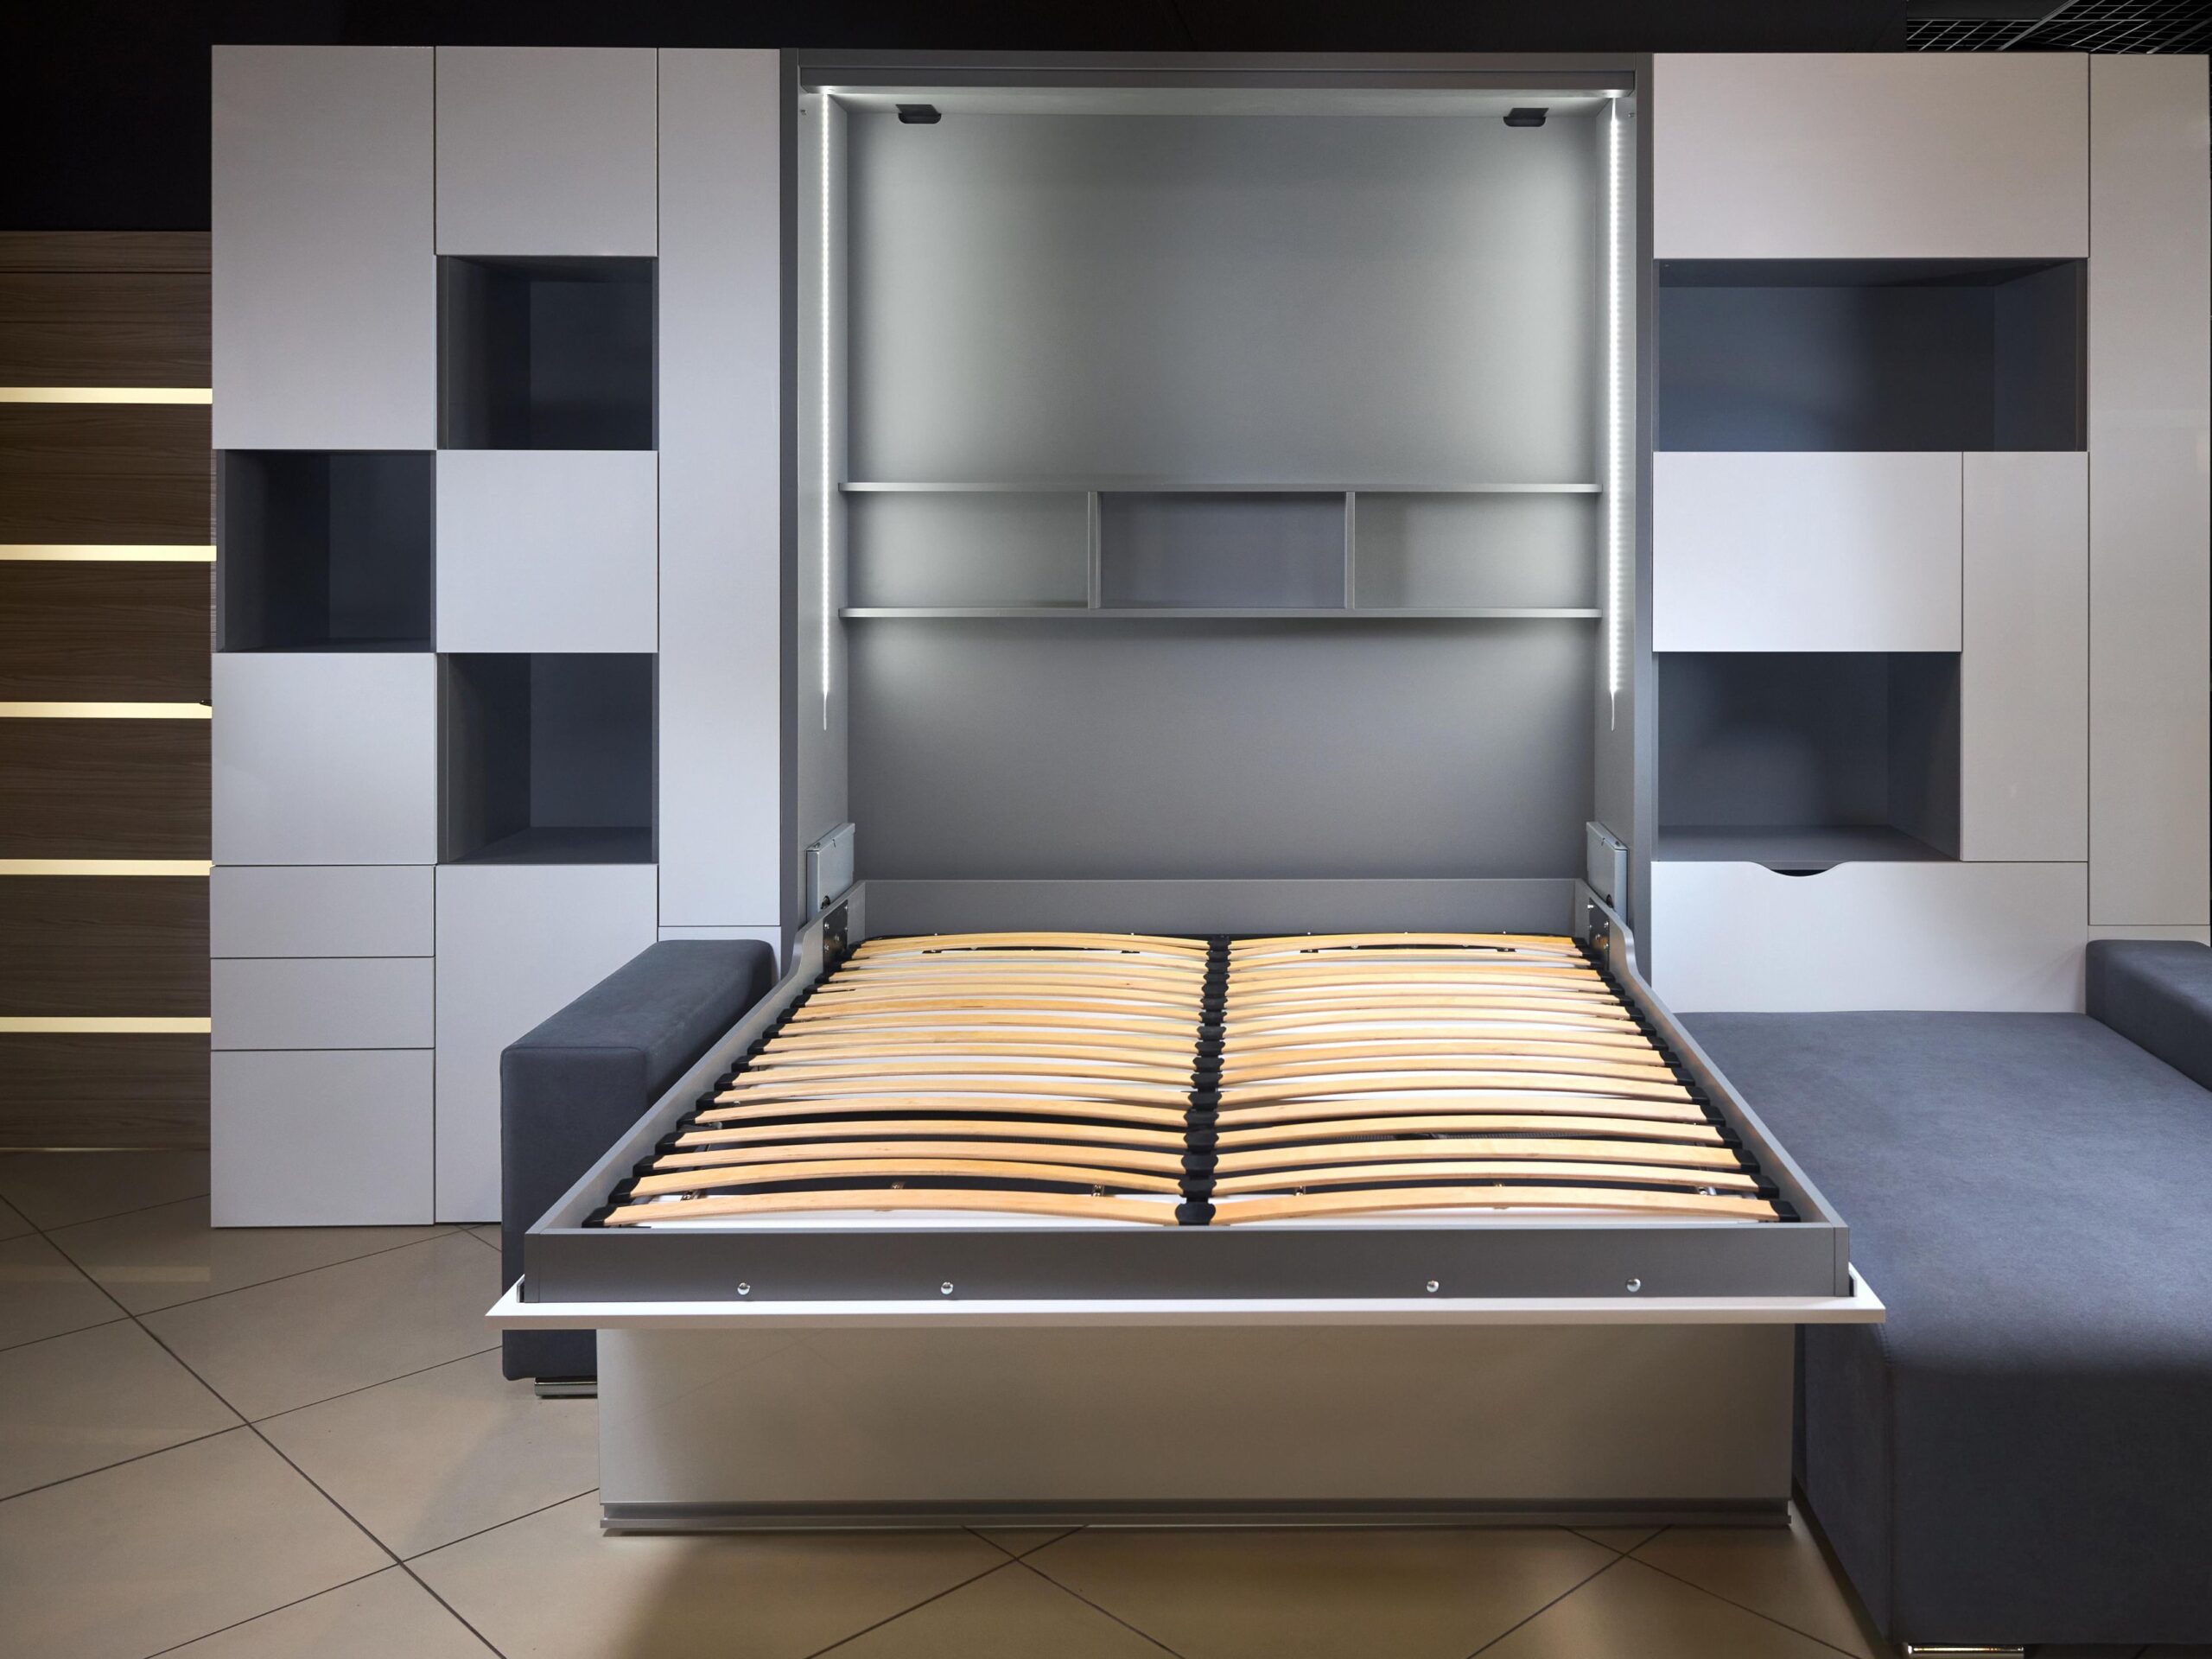 Łóżko podwieszane, chowane w suficie – nowoczesne rozwiązanie braku miejsca